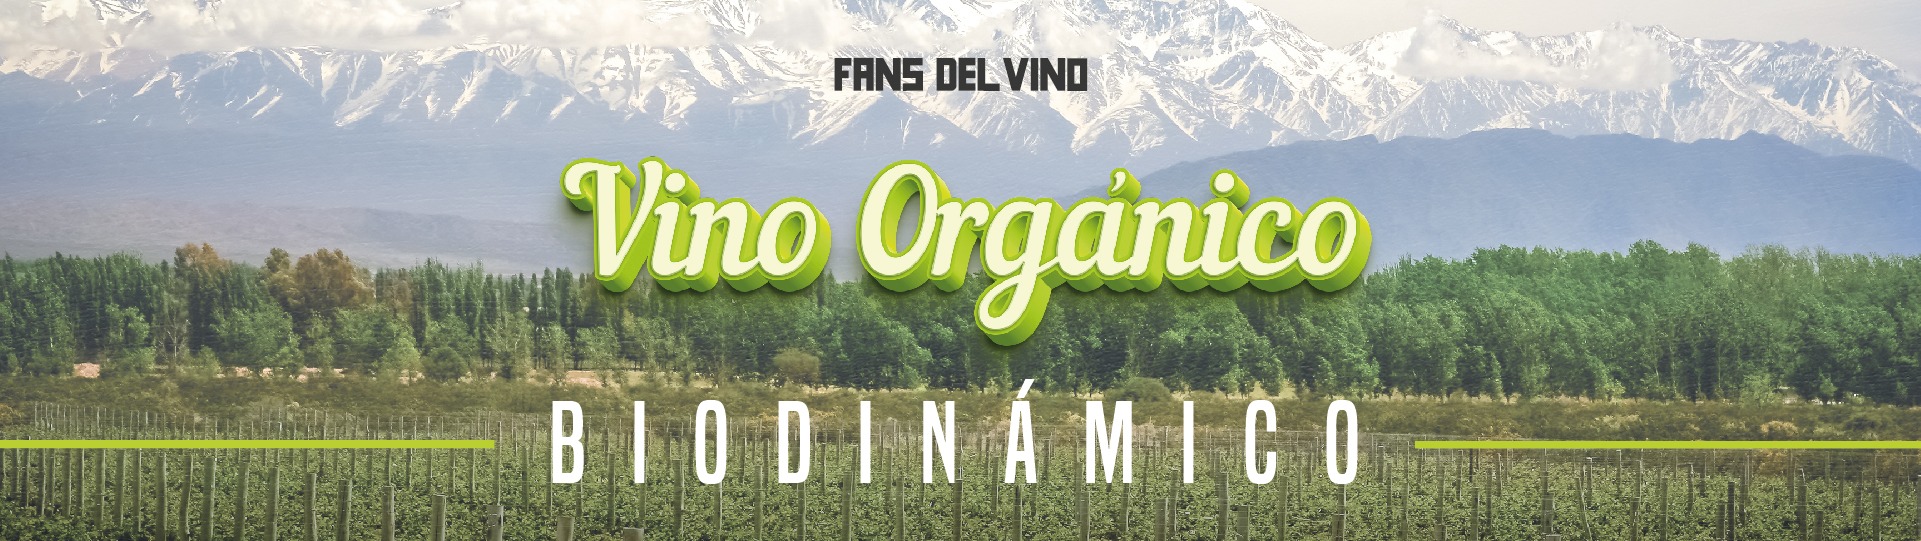 Vinos orgánicos, biodinámicos y naturales